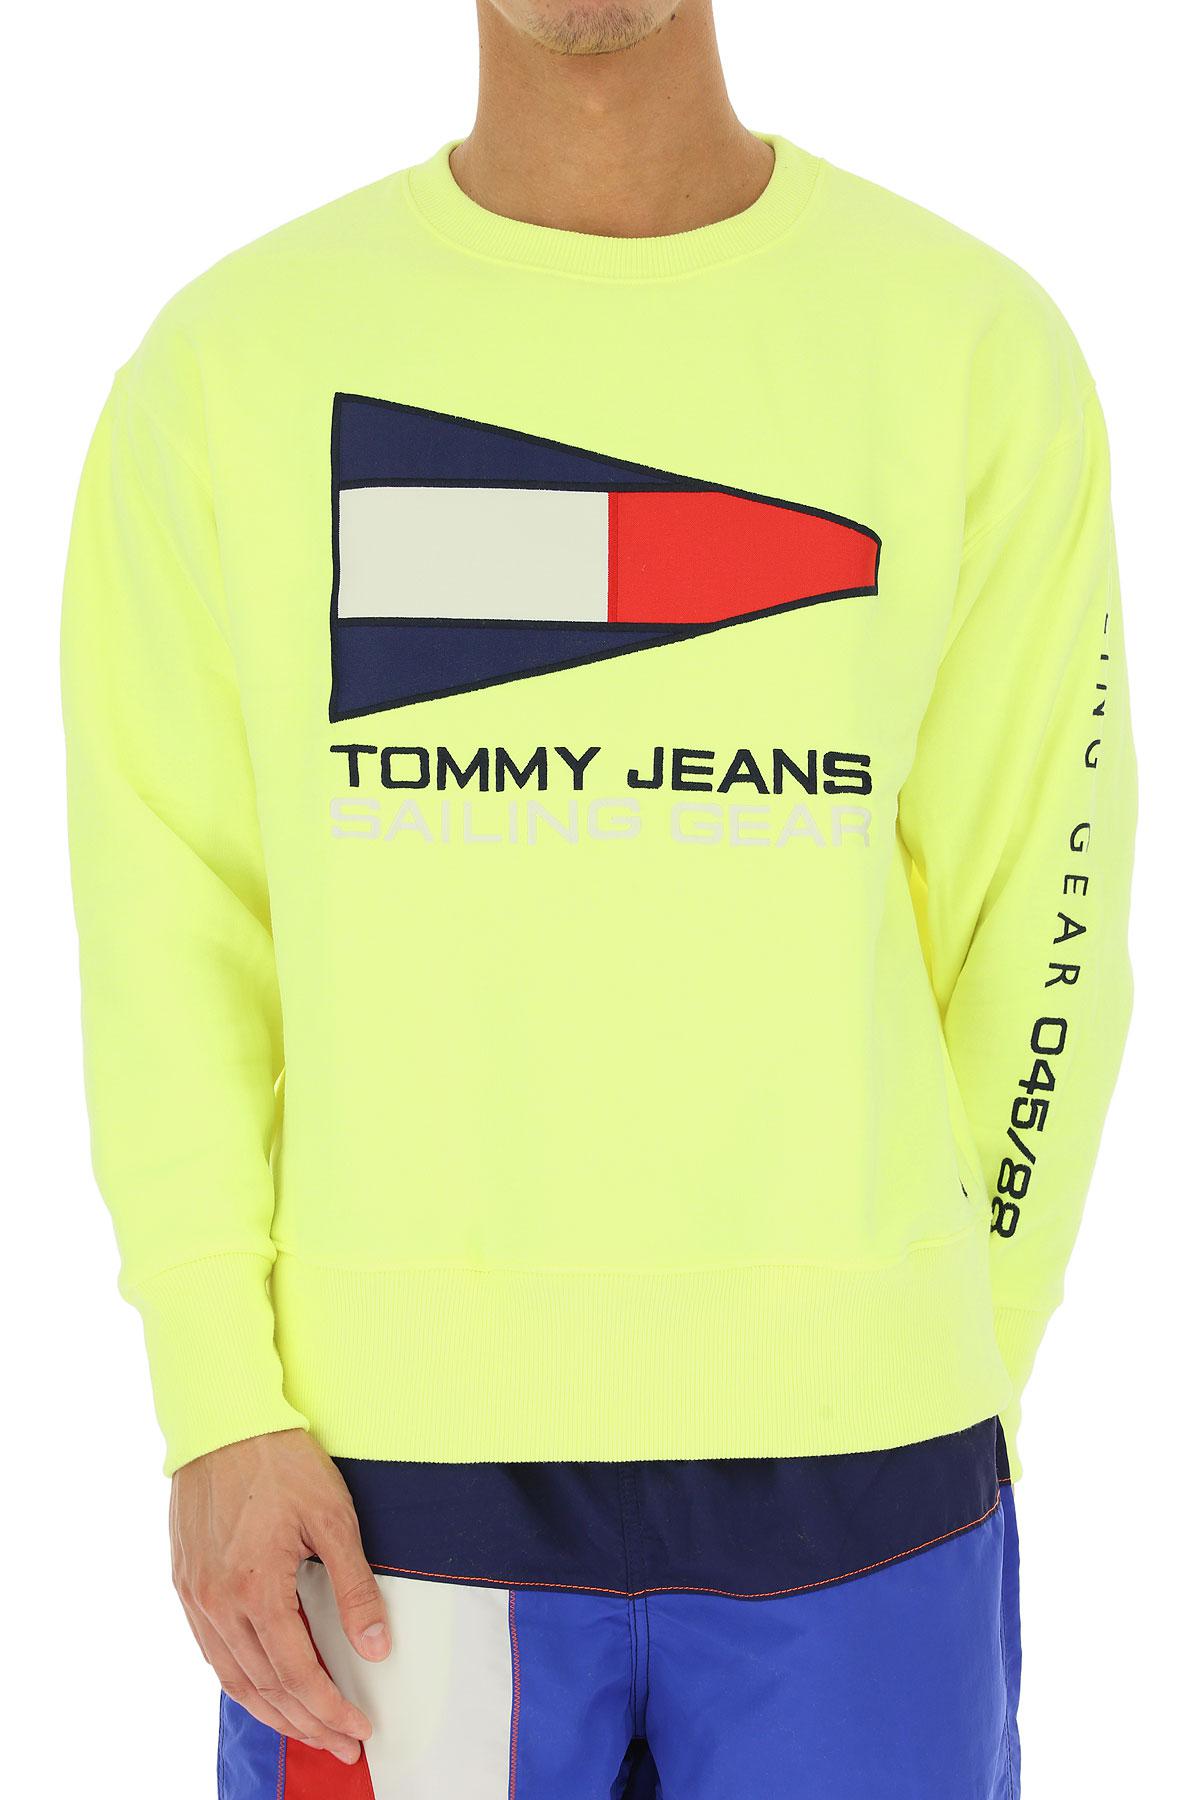 Tommy Hilfiger Denim 90s Neon Sailing 